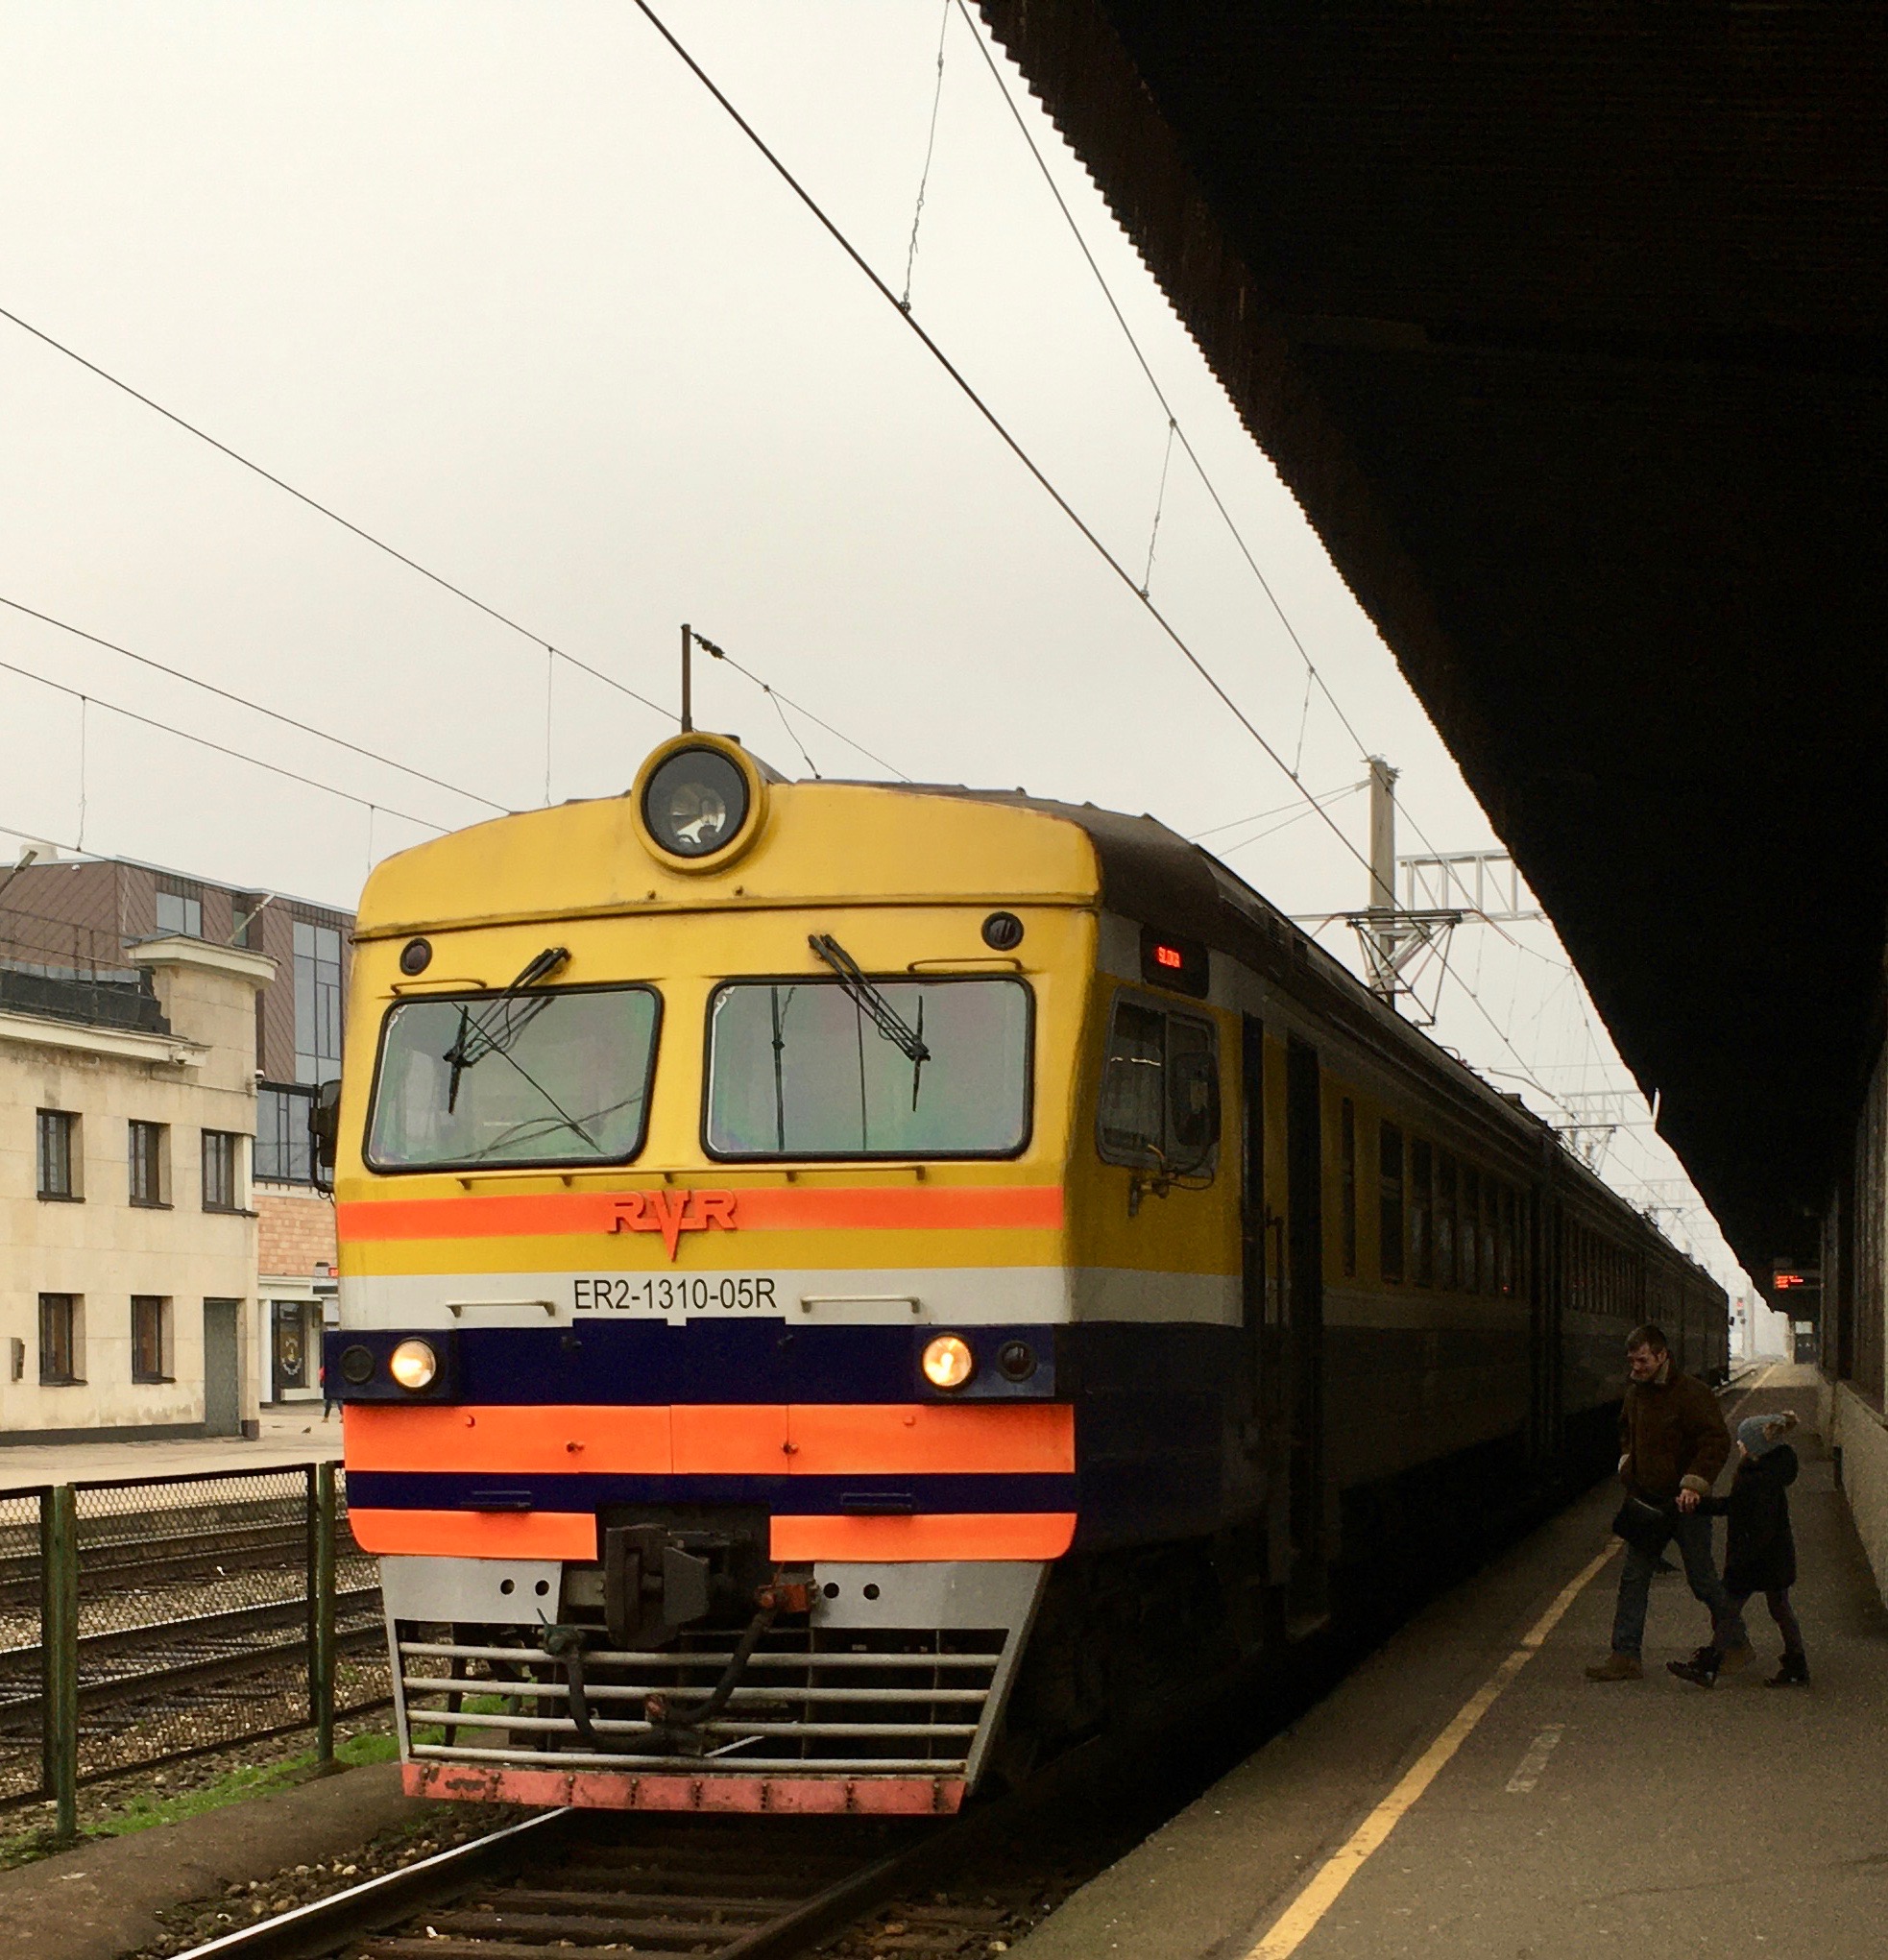 Tuesday Train – Riga in Latva